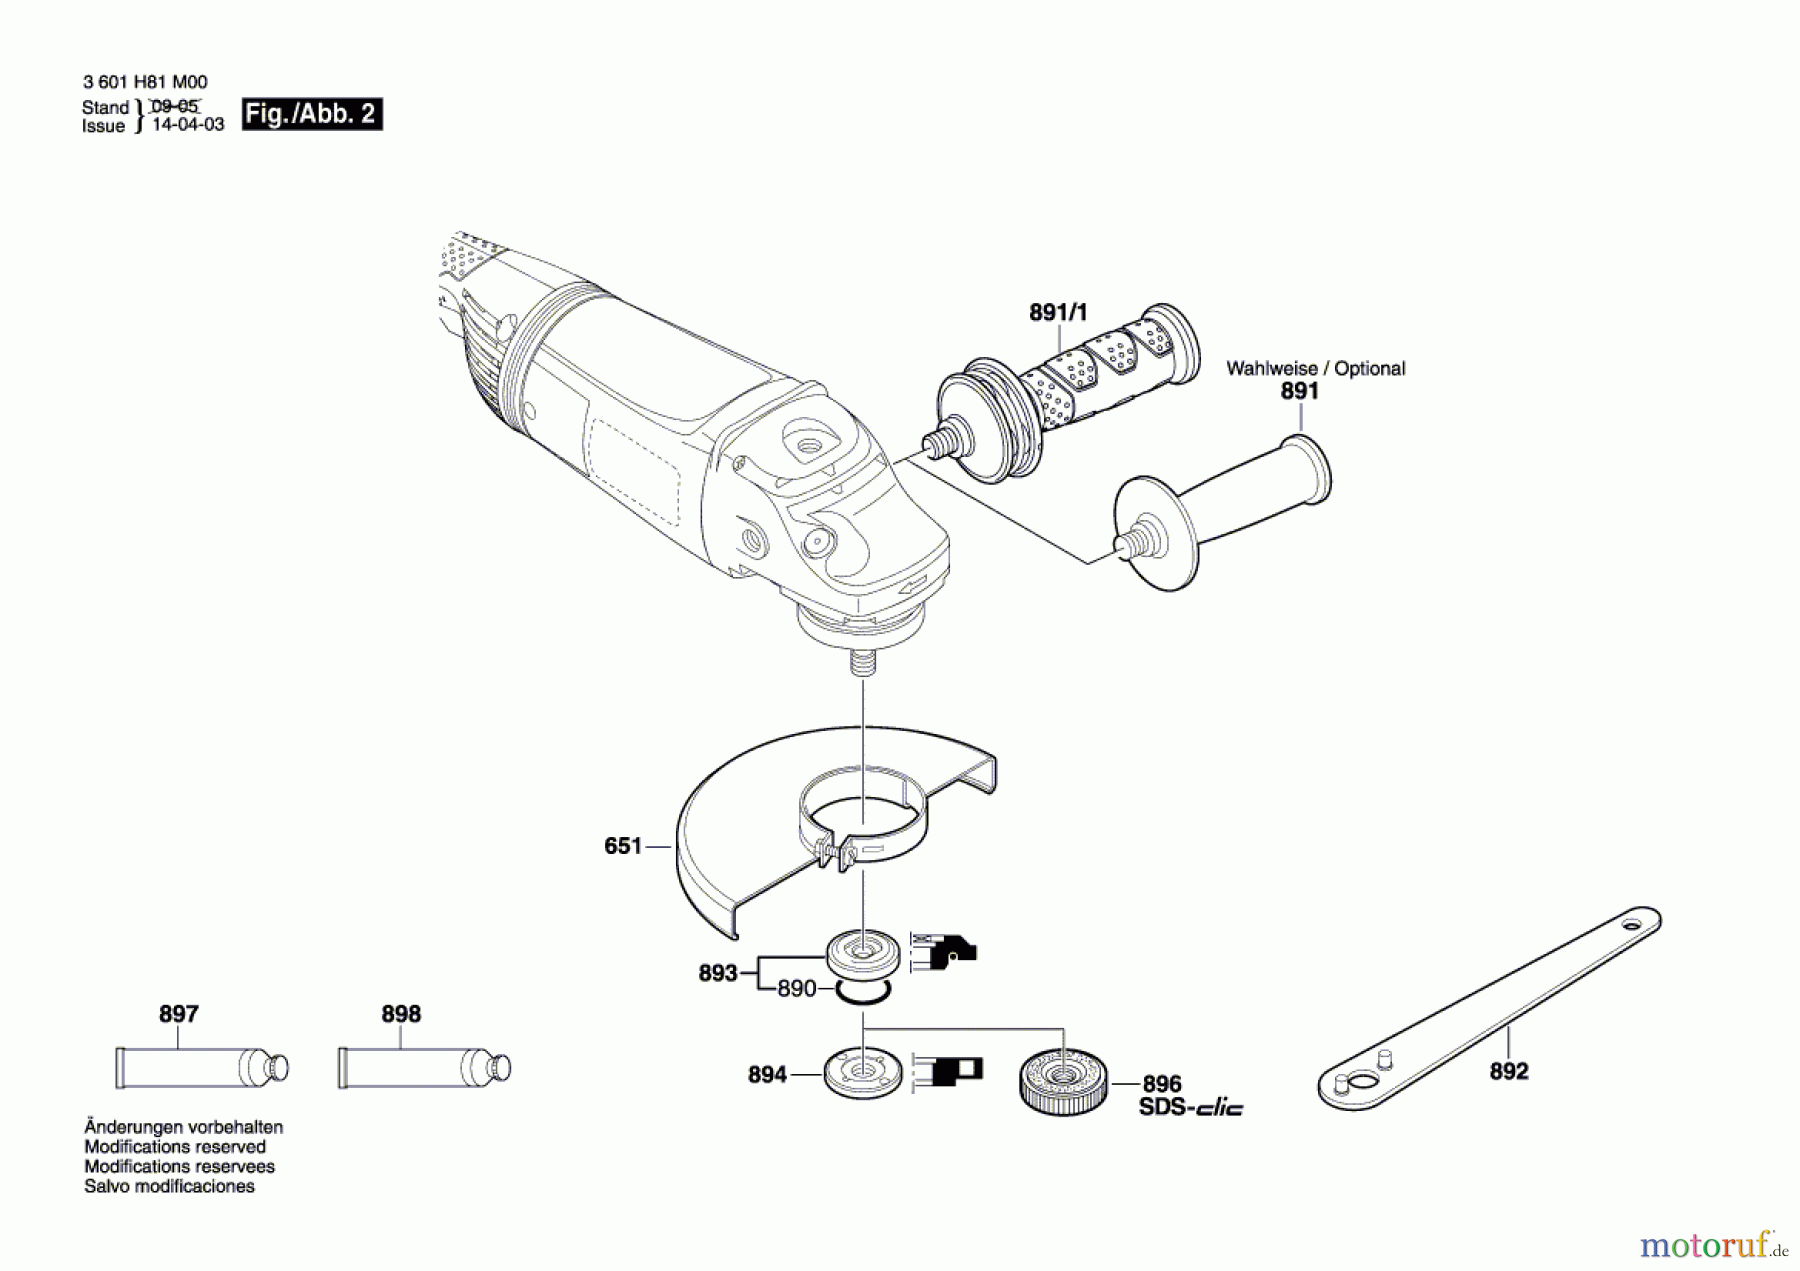  Bosch Werkzeug Winkelschleifer GWS 22-230 JH Seite 2